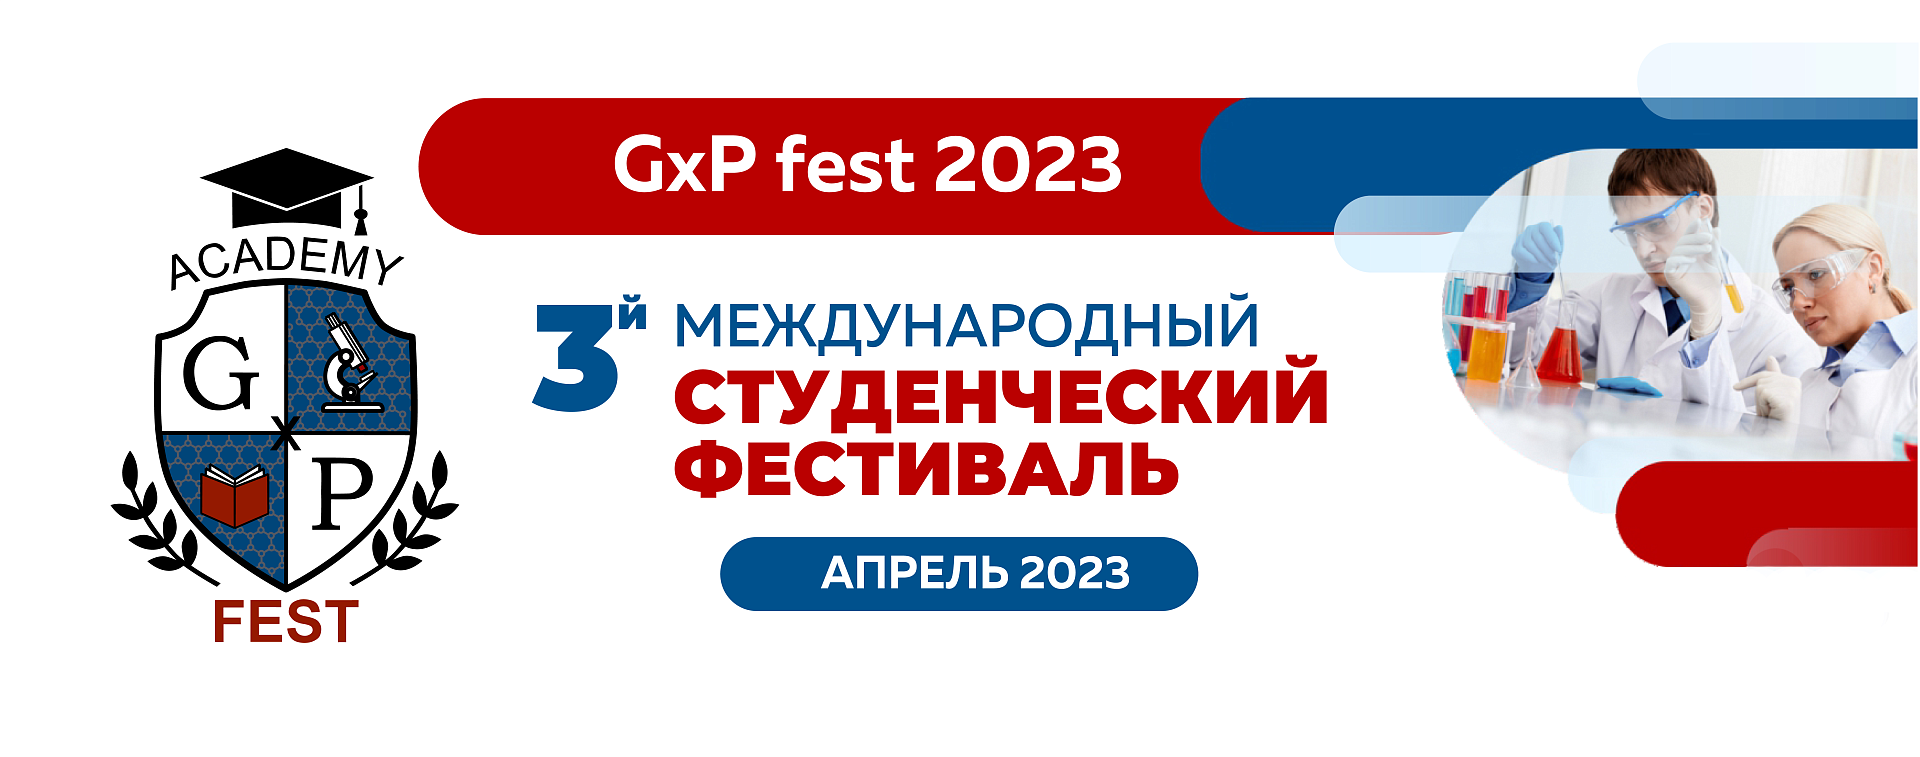 GxP fest 2023